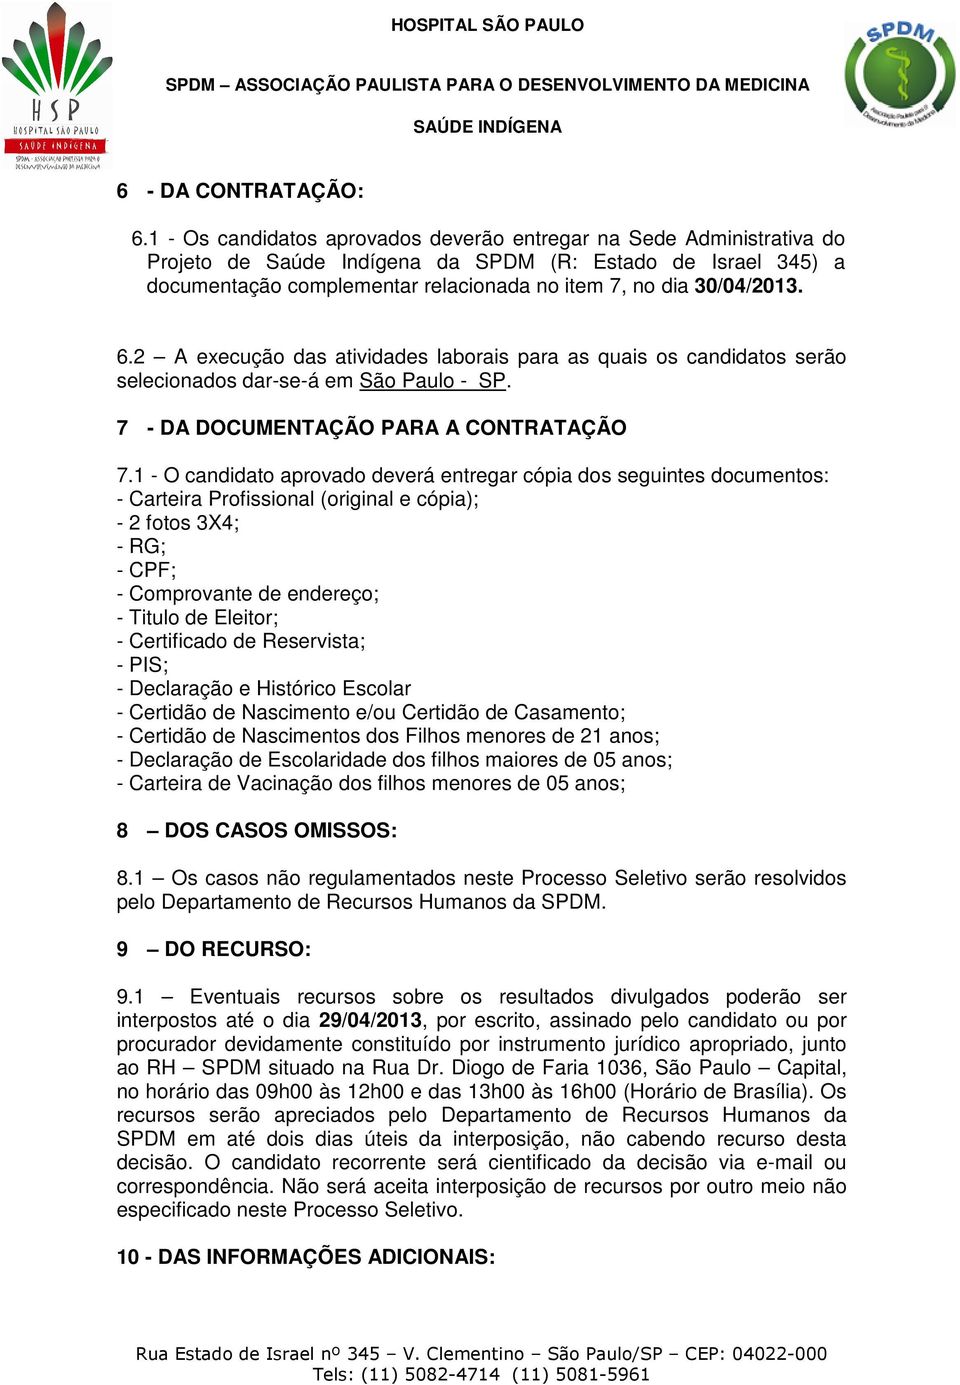 6.2 A execução das atividades laborais para as quais os candidatos serão selecionados dar-se-á em São Paulo - SP. 7 - DA DOCUMENTAÇÃO PARA A CONTRATAÇÃO 7.